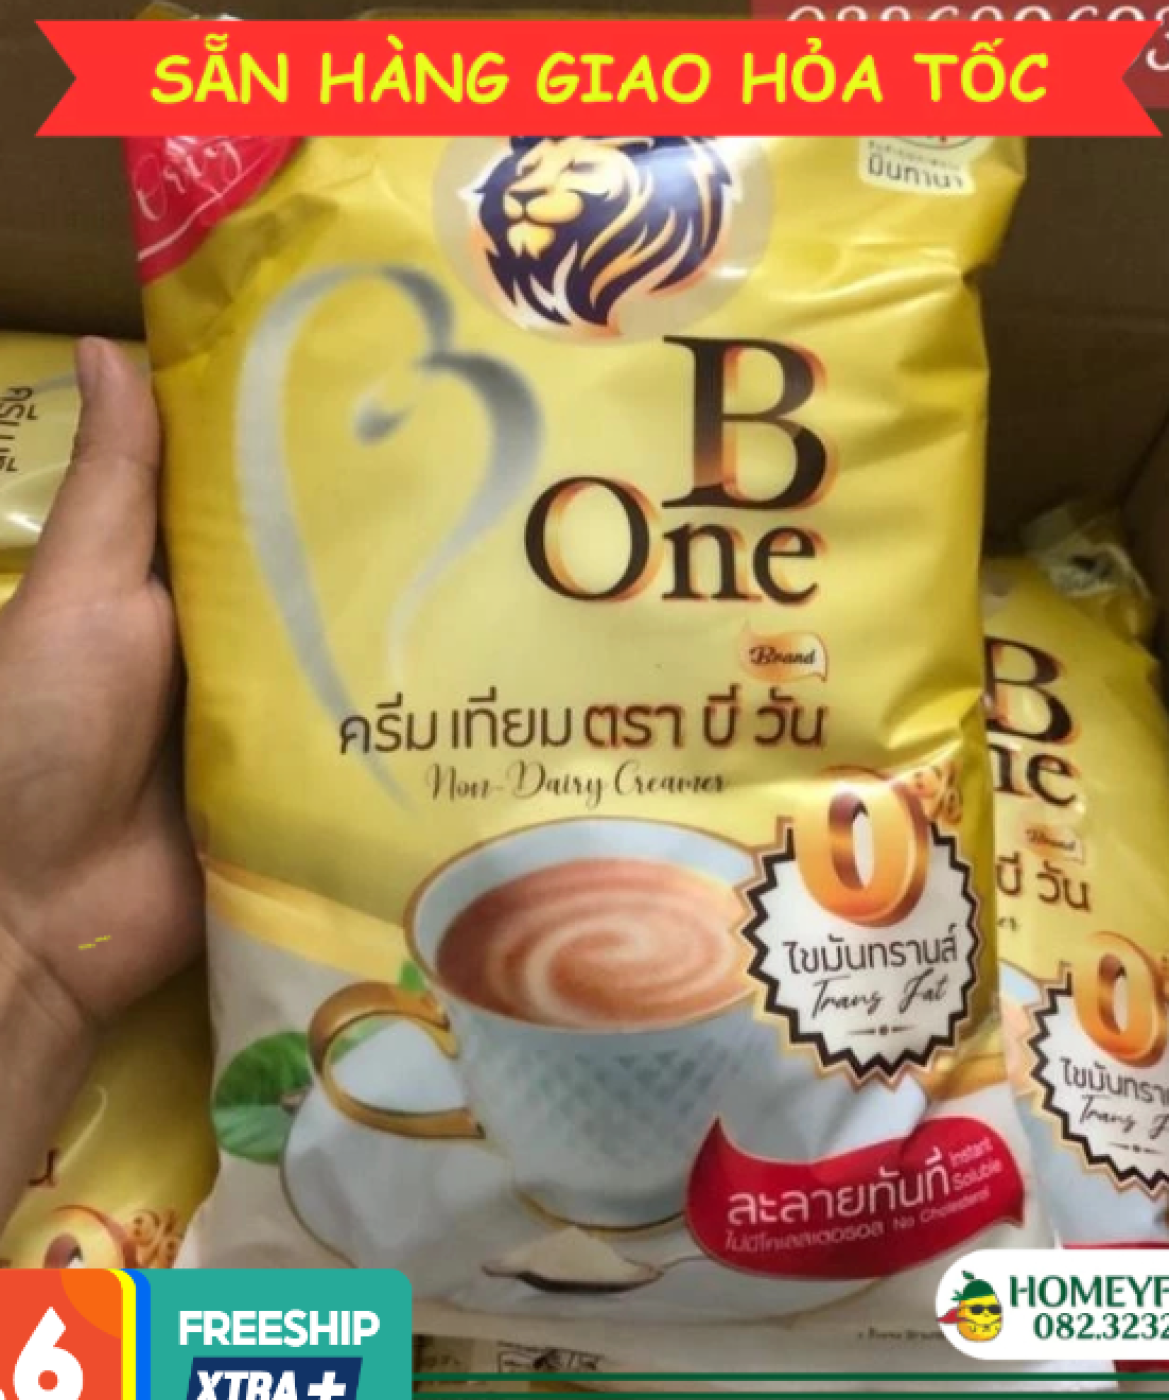 Bột kem béo Thái Lan B-One gói 1kg